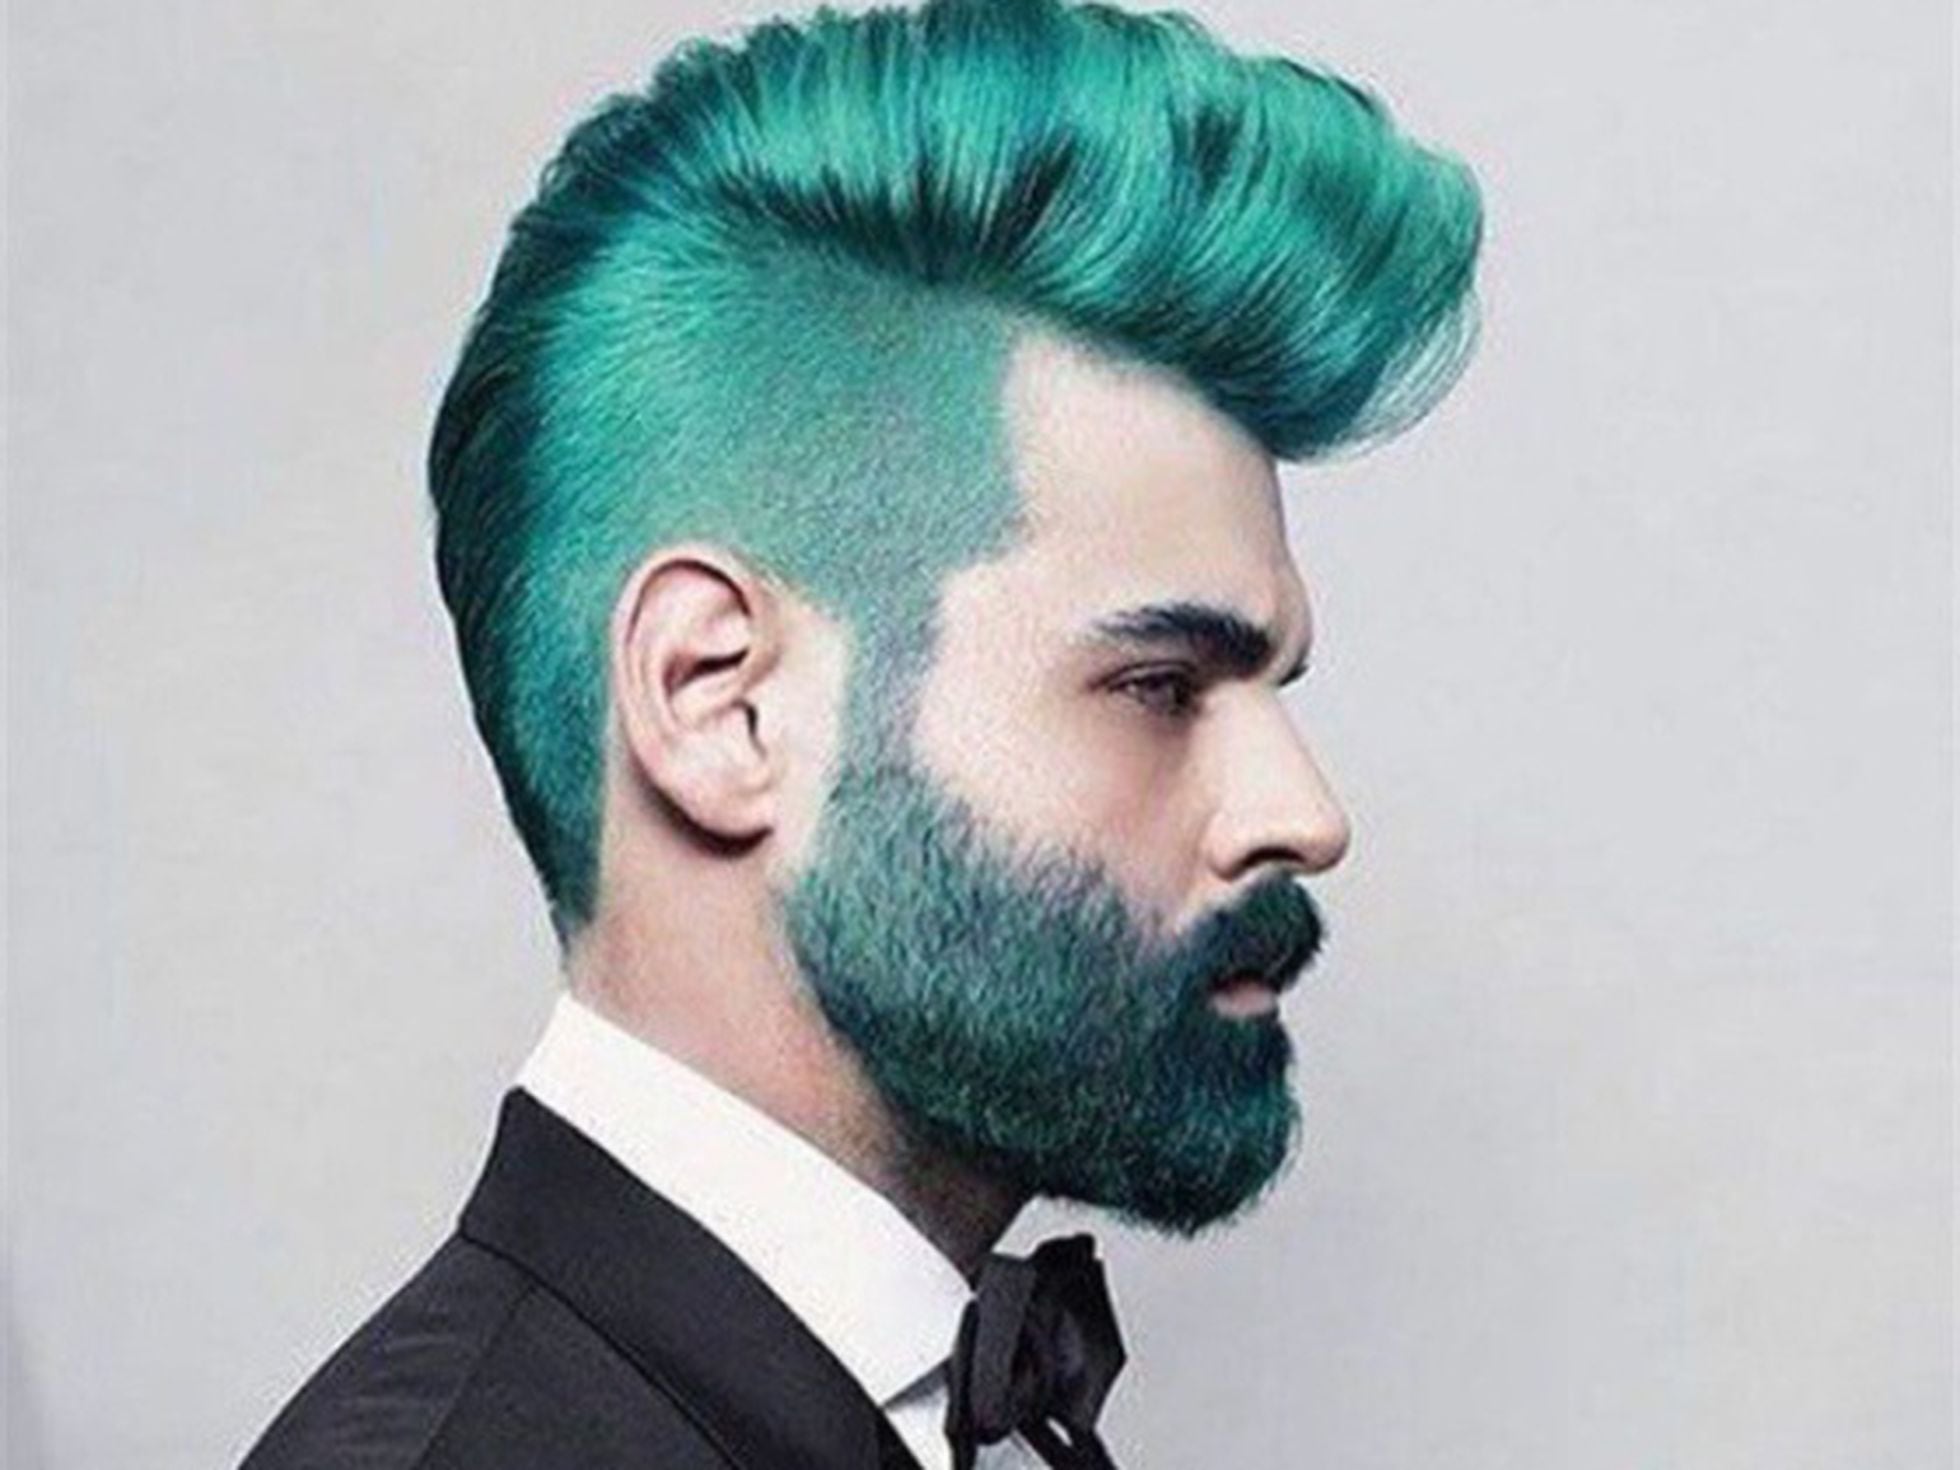 La moda 'merman': teñirse de azul barba y el pelo, ¿sí o no? | ICON | EL PAÍS